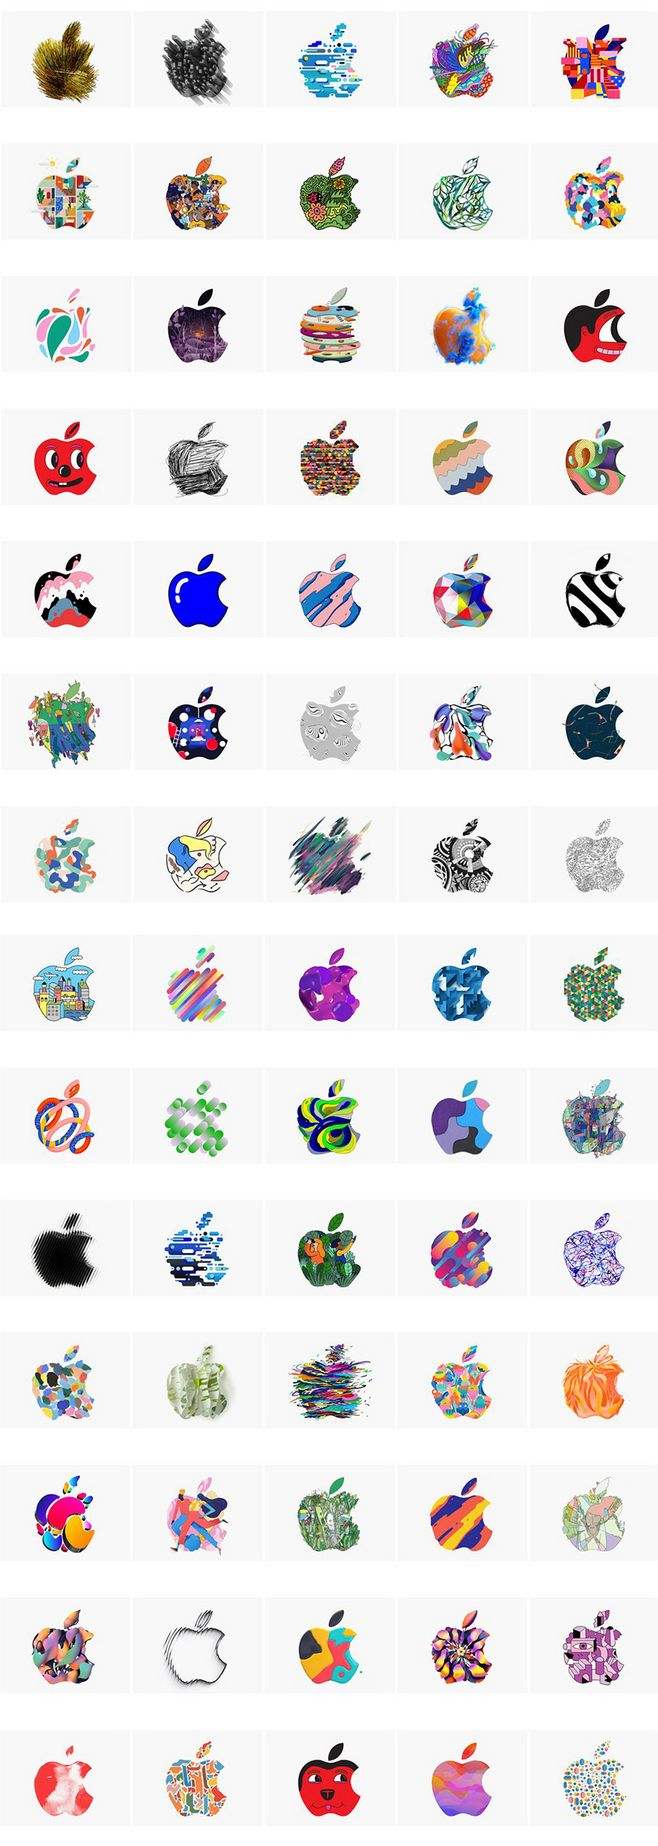 苹果手机的logo苹果手机logo怎么打